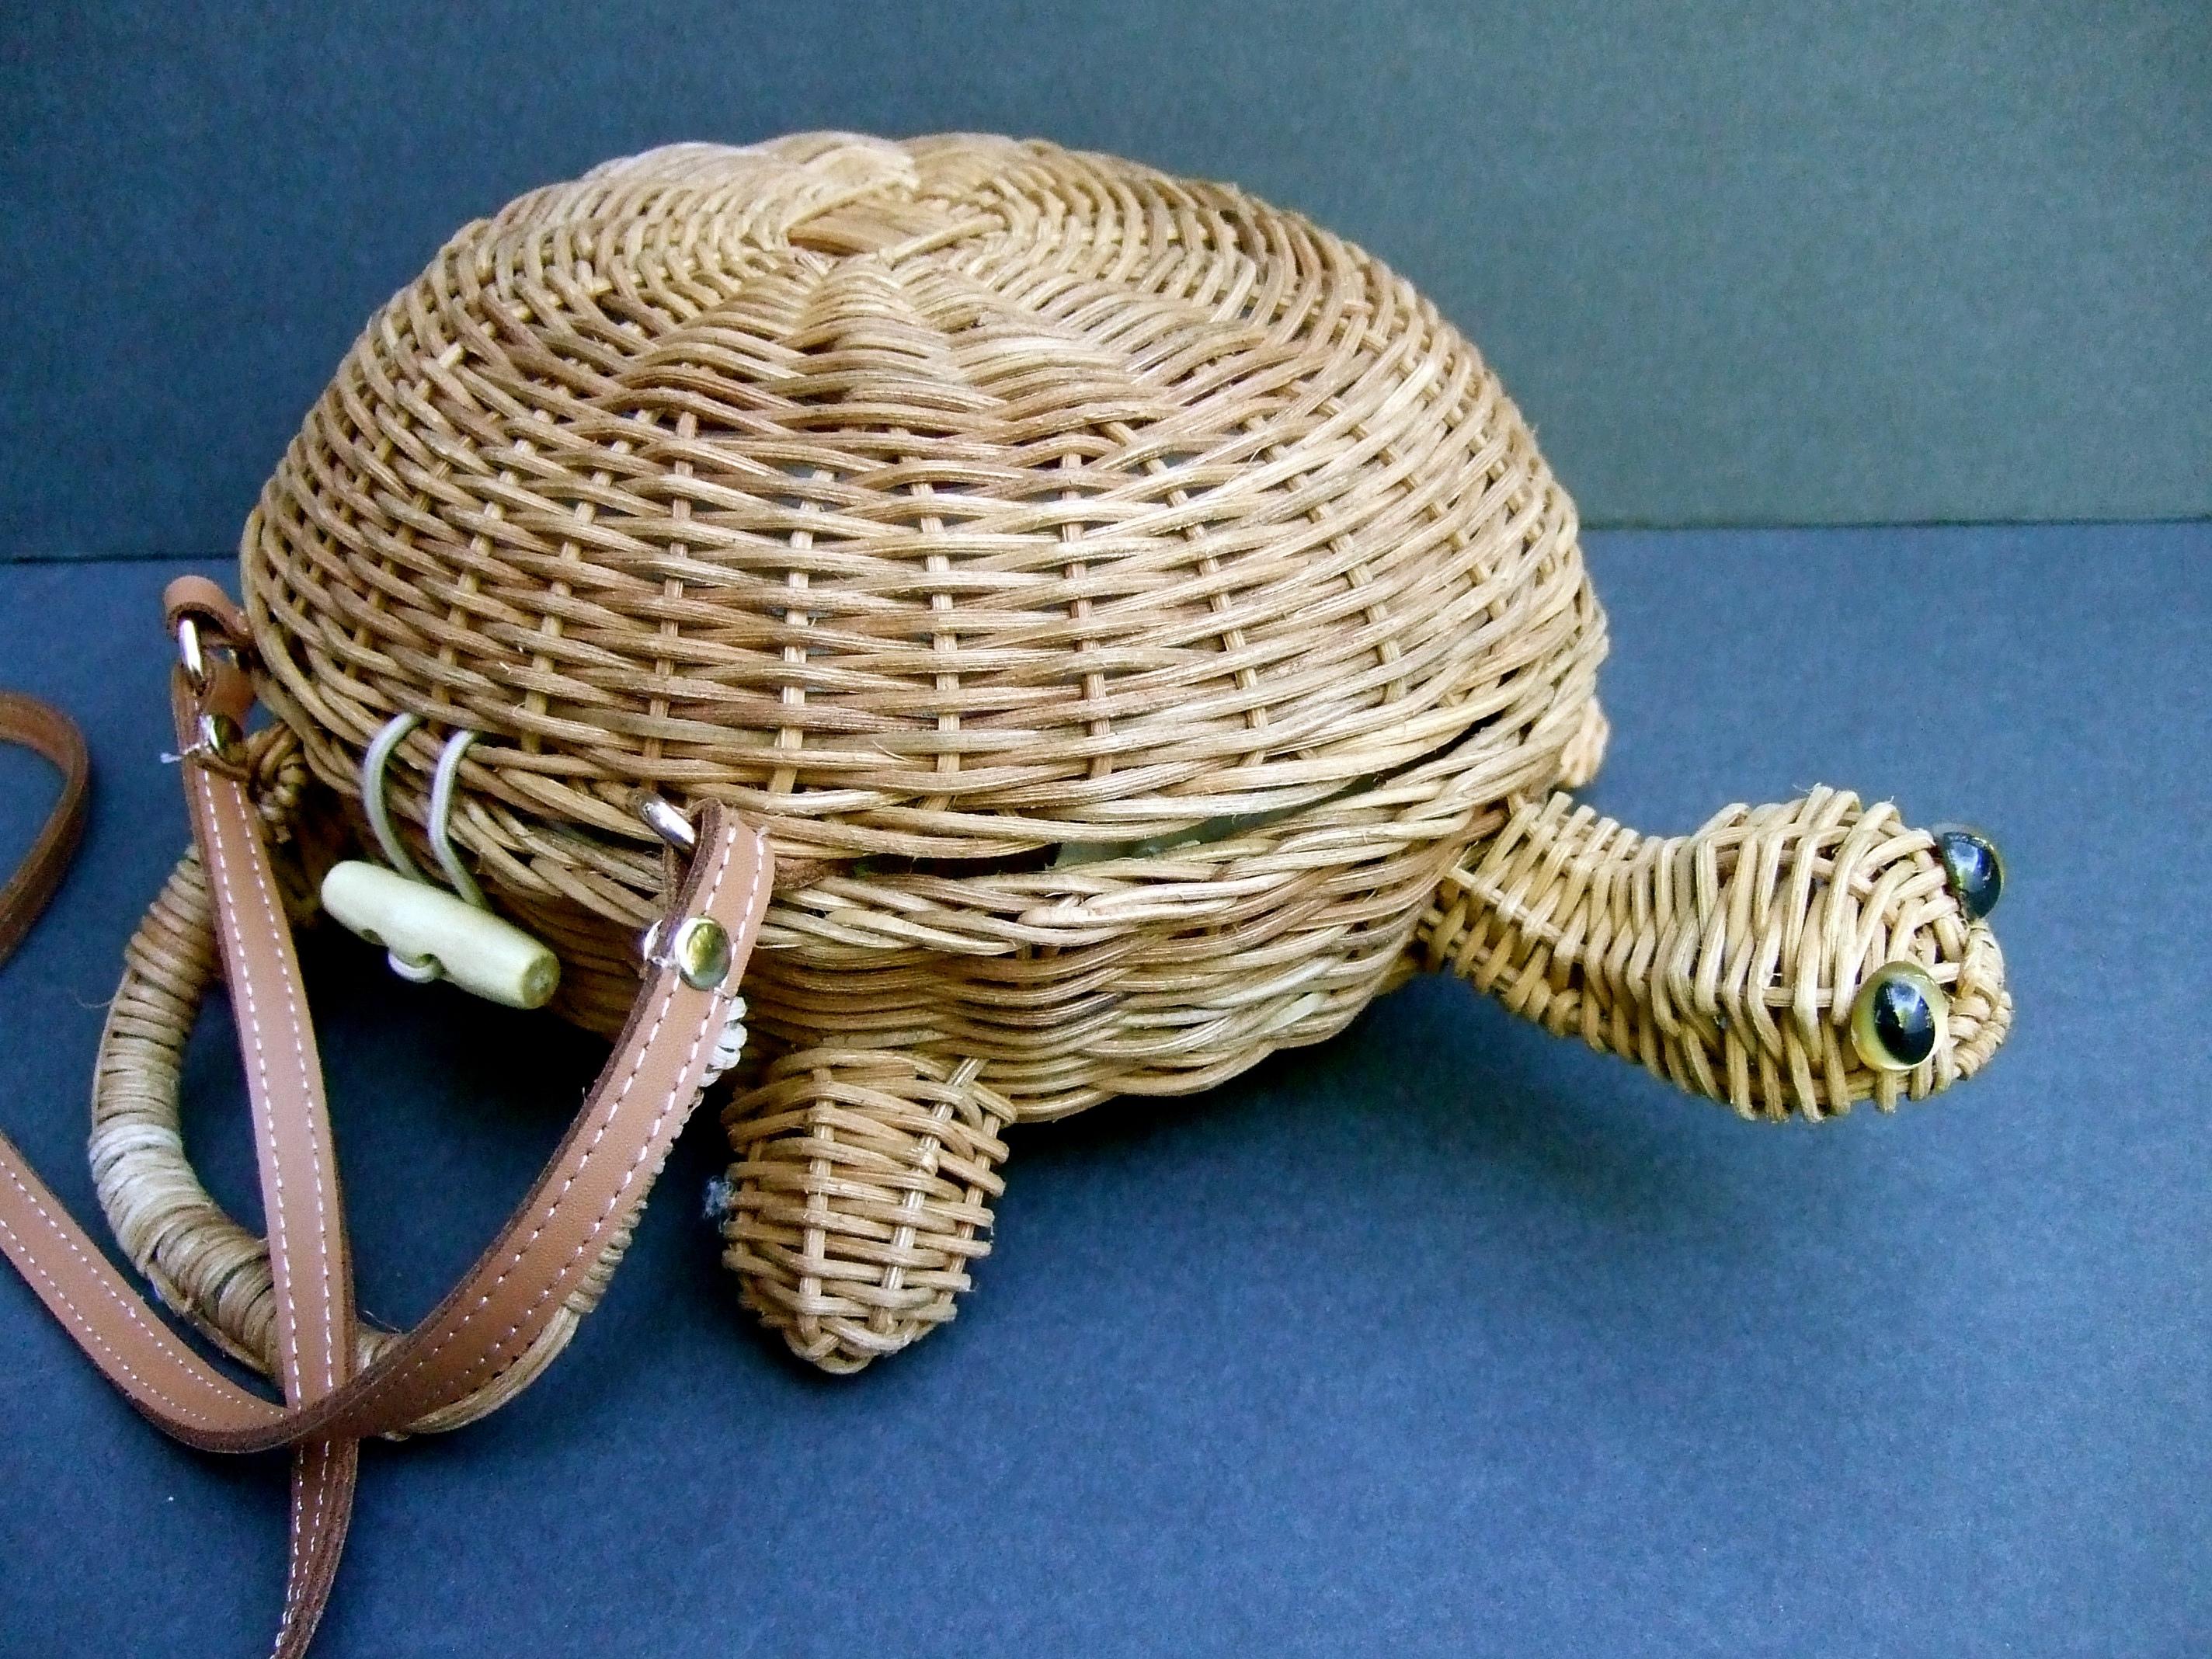 Beige Charming Woven Wicker Turtle Design Versatile Handbag - Shoulder Bag c 1990s